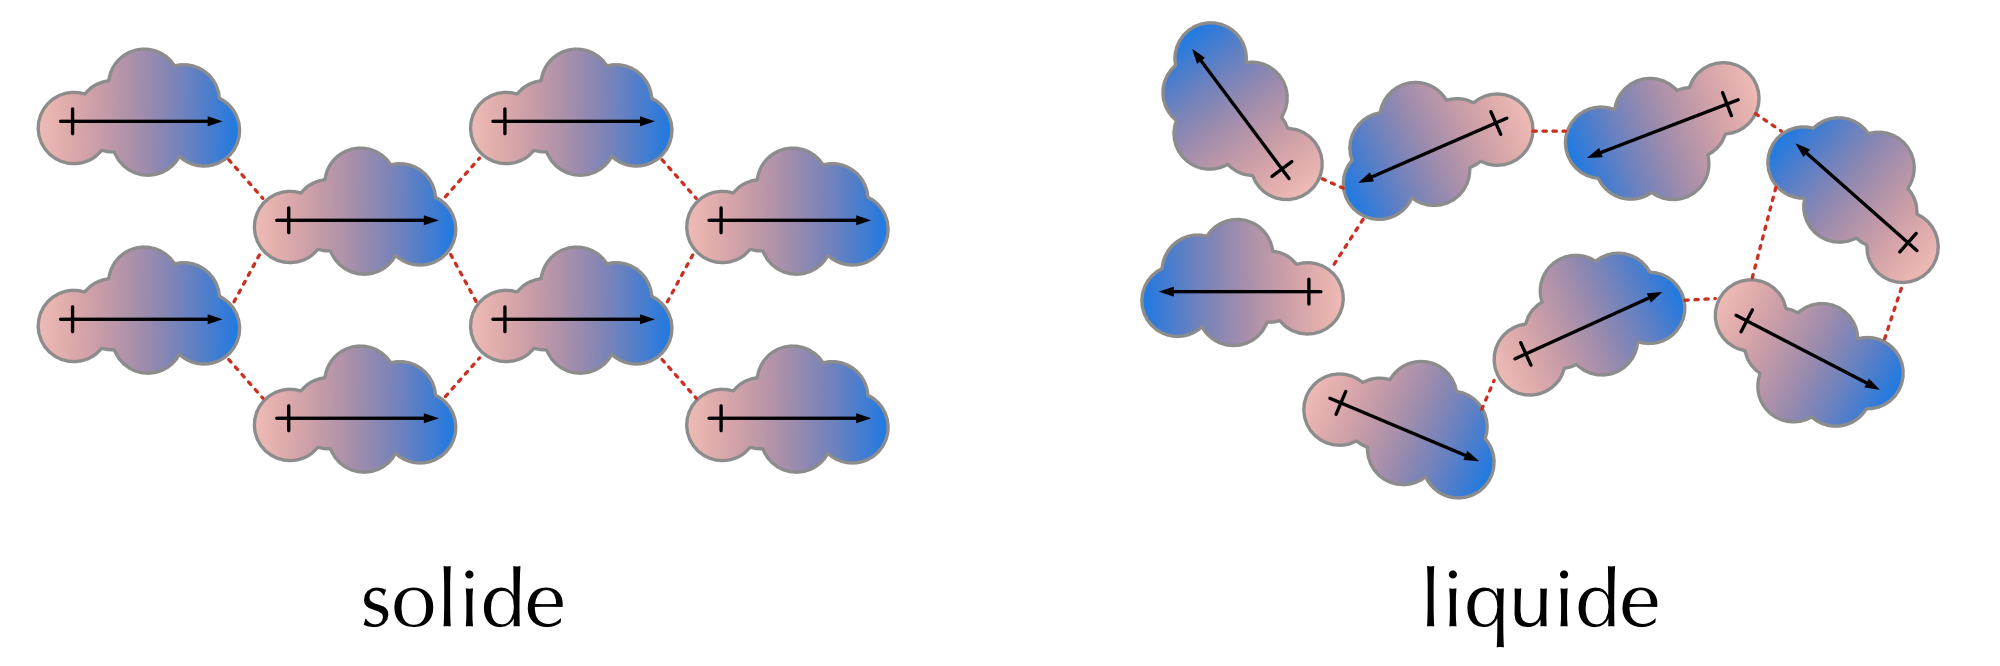 Molécules polaires et interaction dipôle-dipôle.